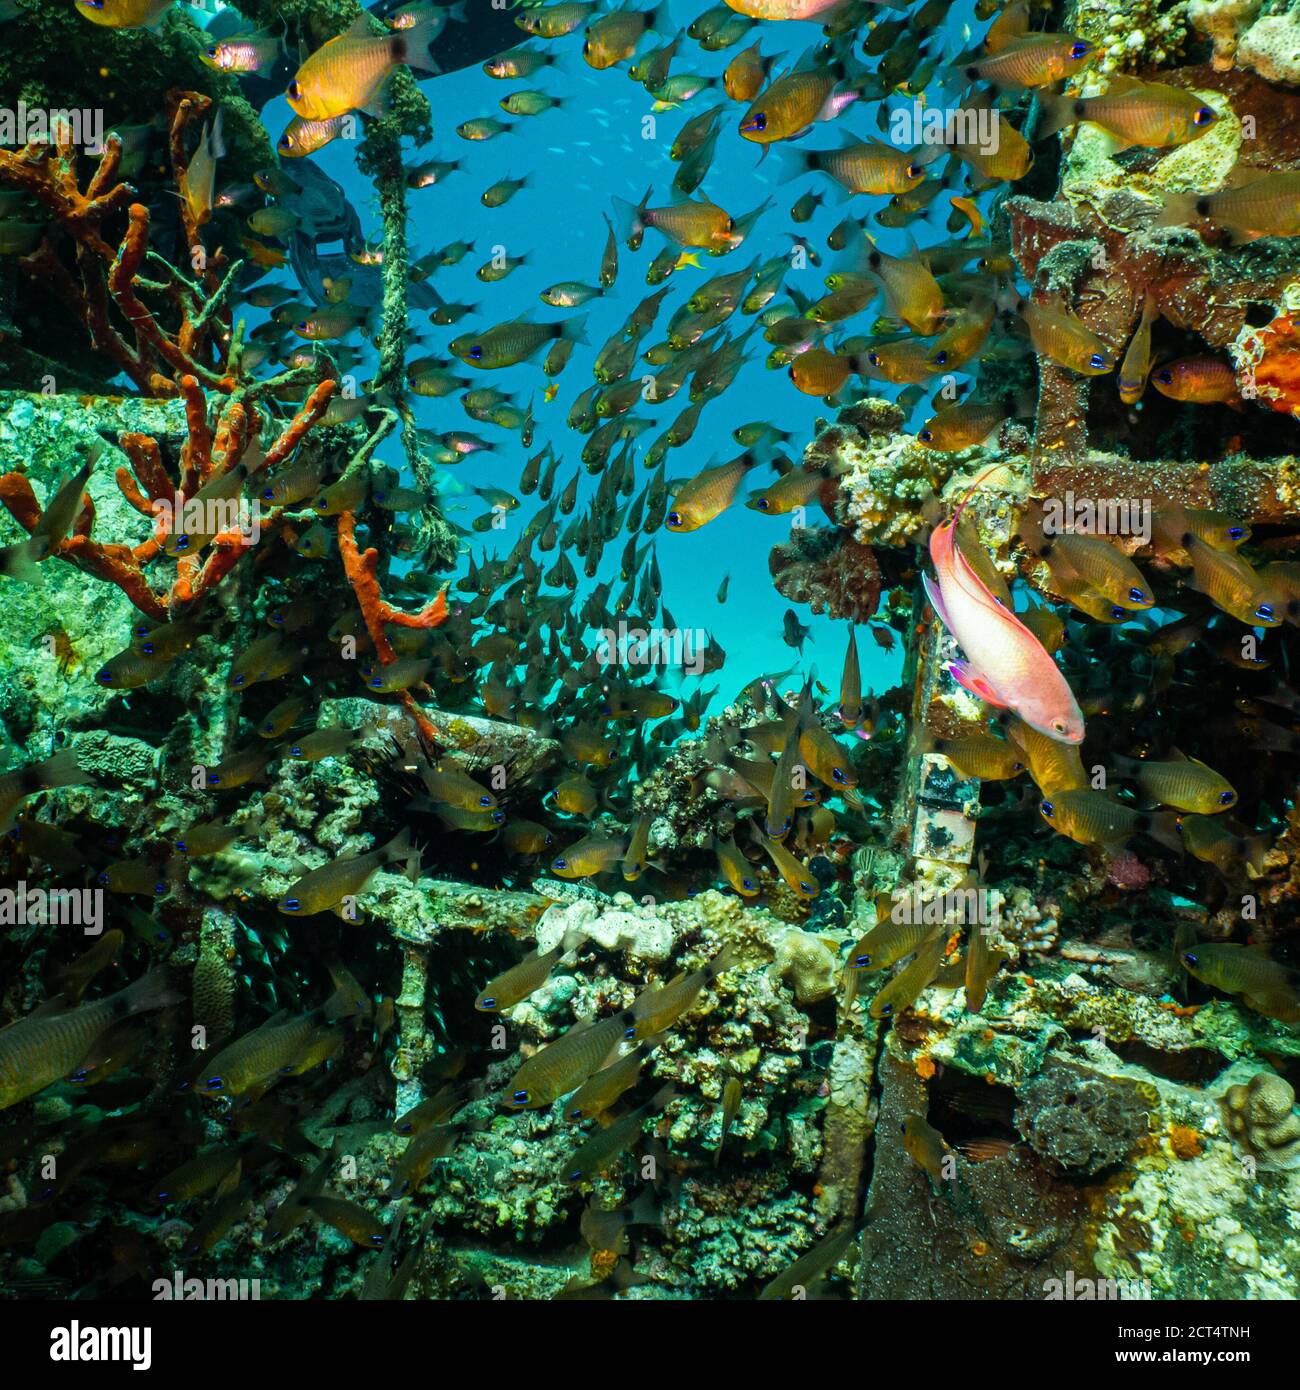 Una barriera corallina artificiale brulicante di pesci. Foto di una barriera corallina del Mar Rosso, Egitto Foto Stock